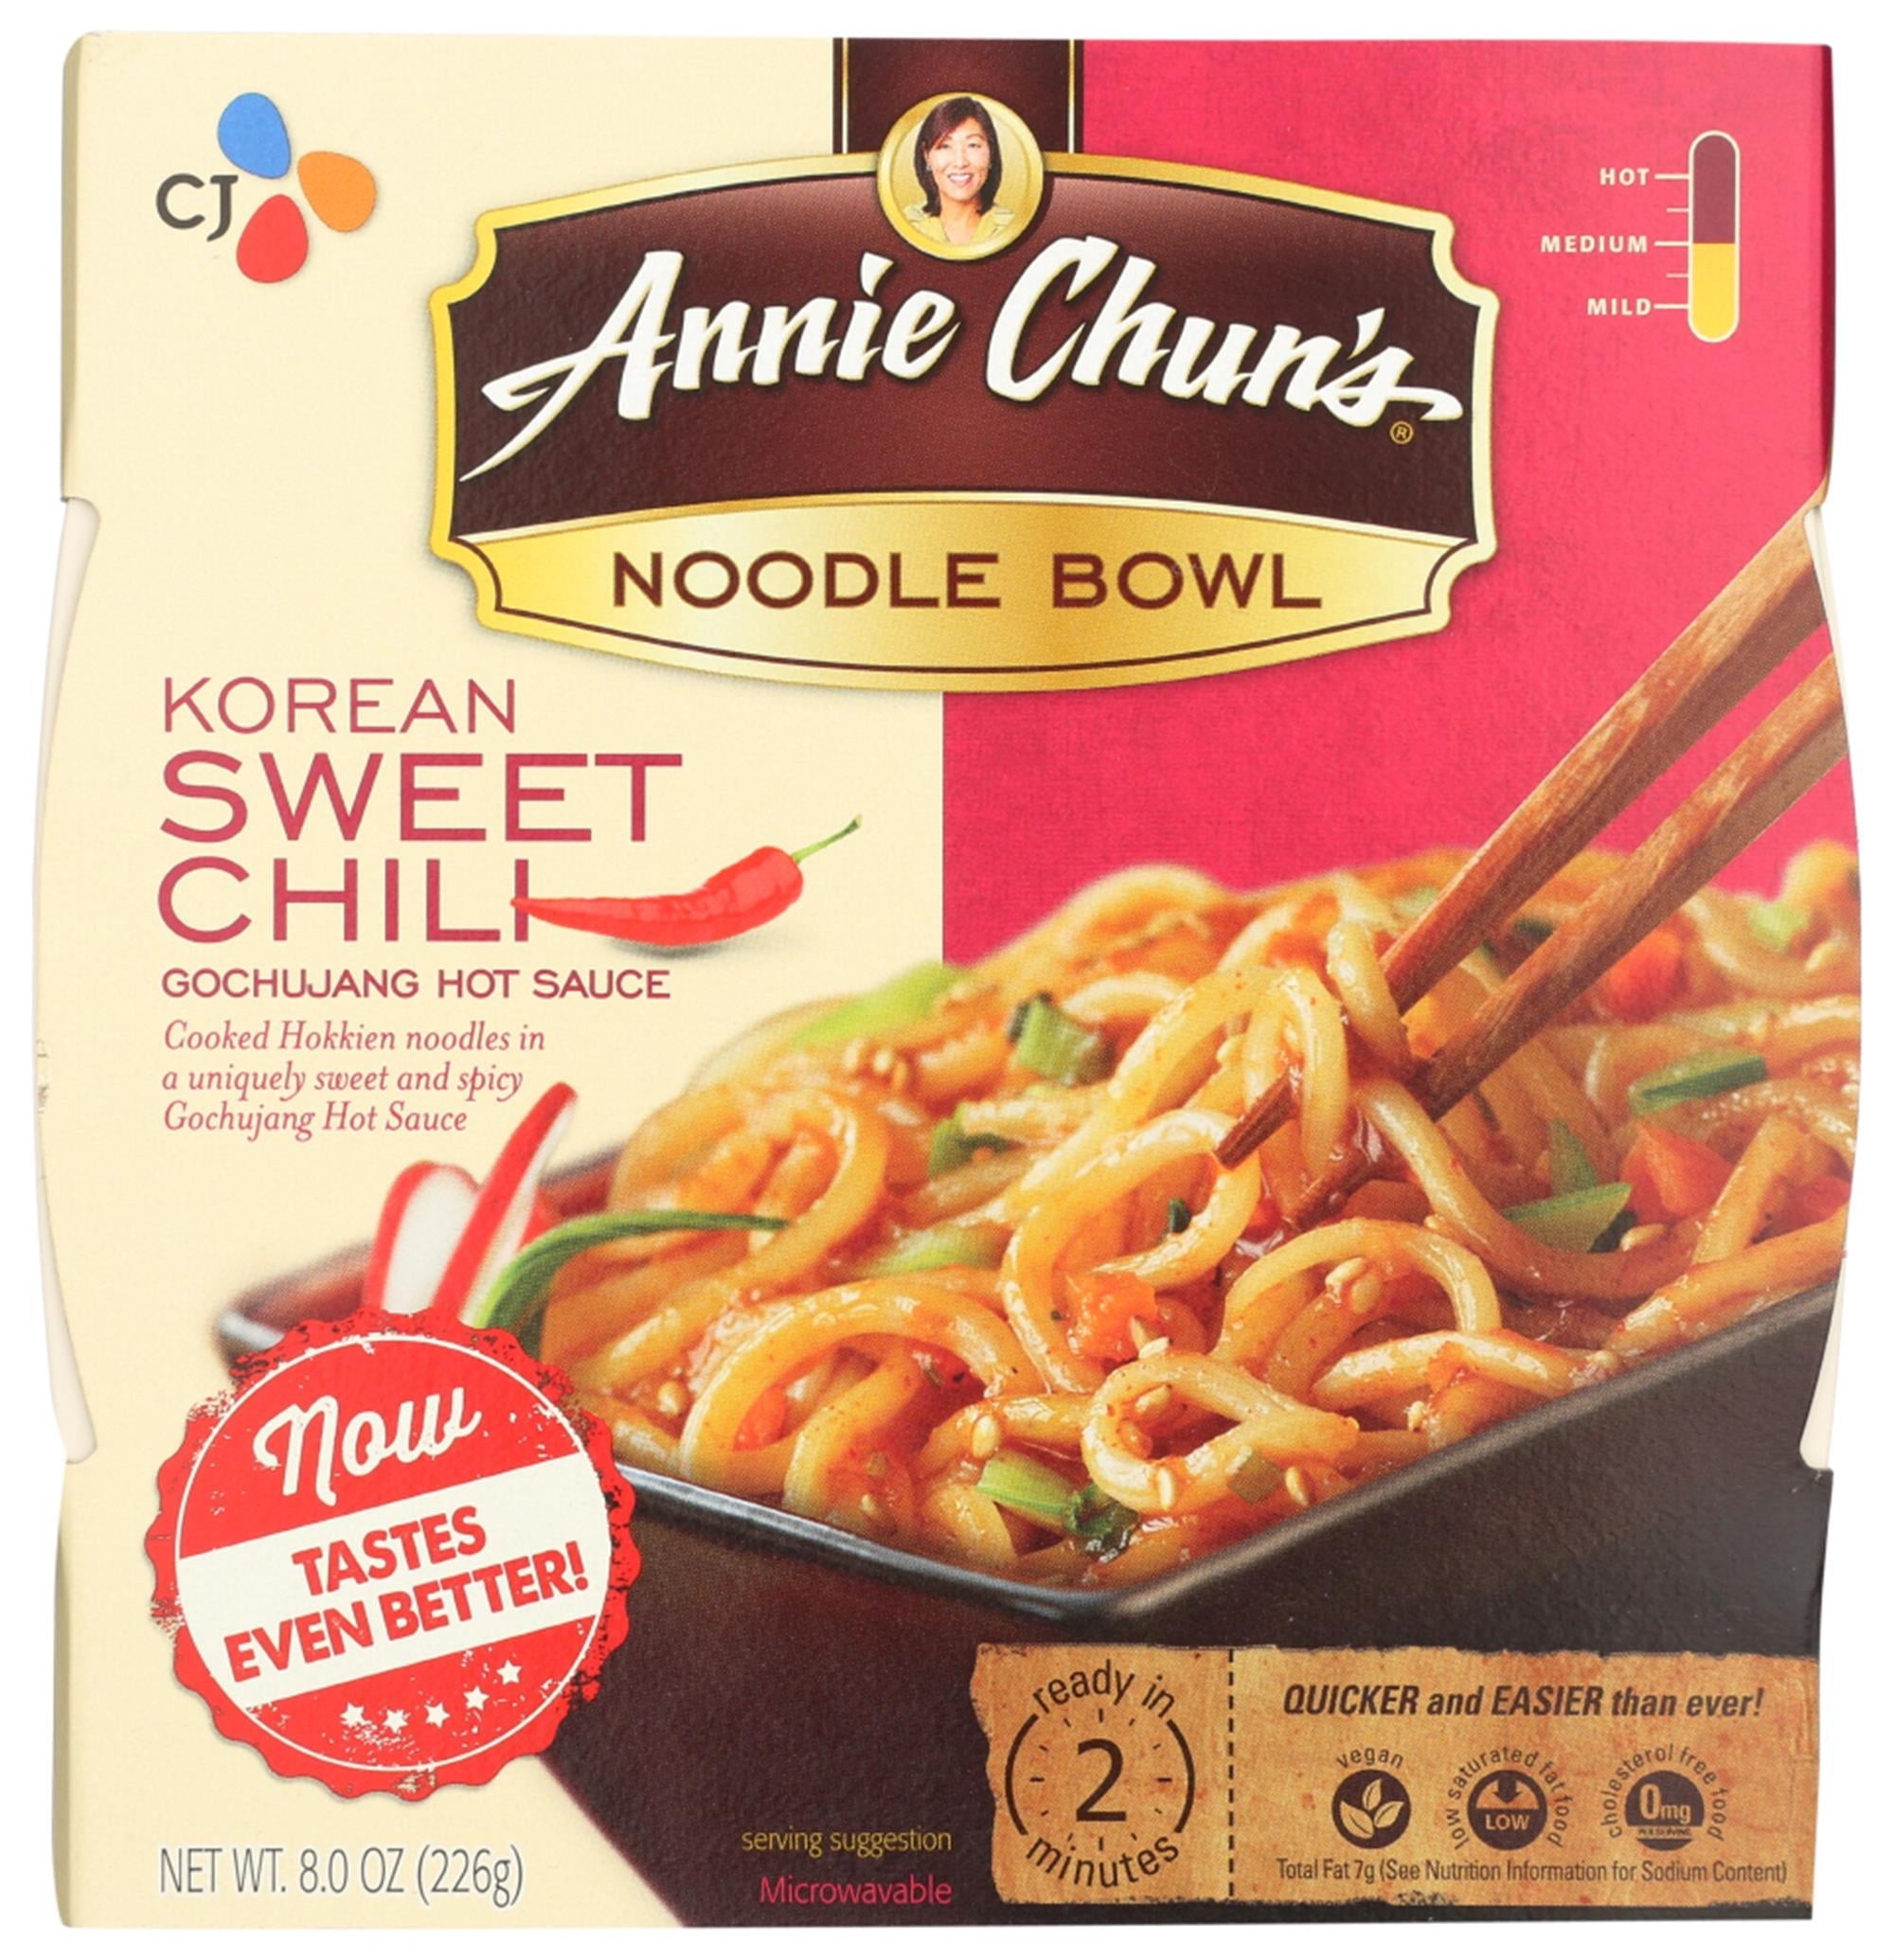 Annie Chuns Noodle Bowl Korean Chili Sweet 7.9 oz Bag